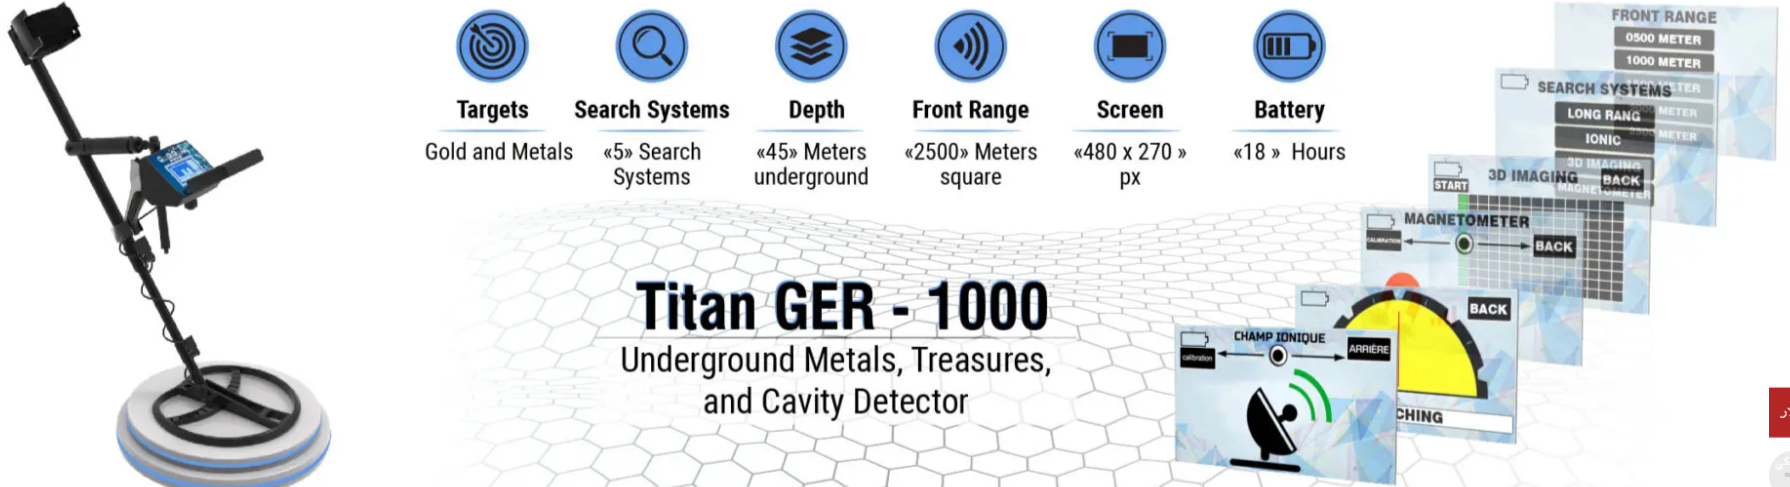 تيتان جير 1000 لكشف الذهب والكنوز  Do